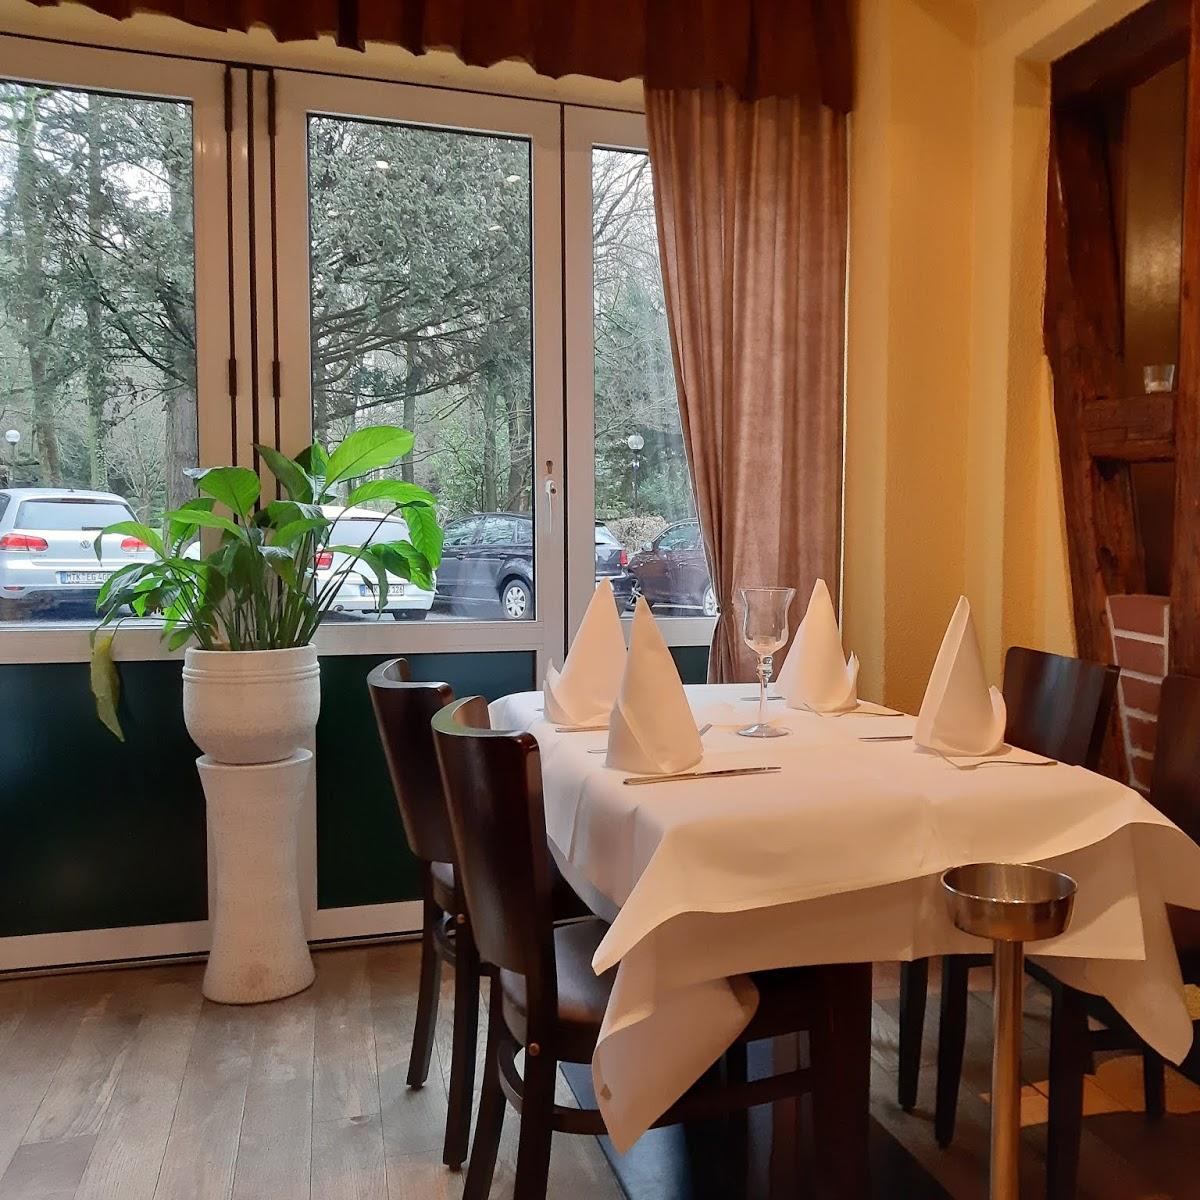 Restaurant "Gasthaus Kurschänke" in  Taunus